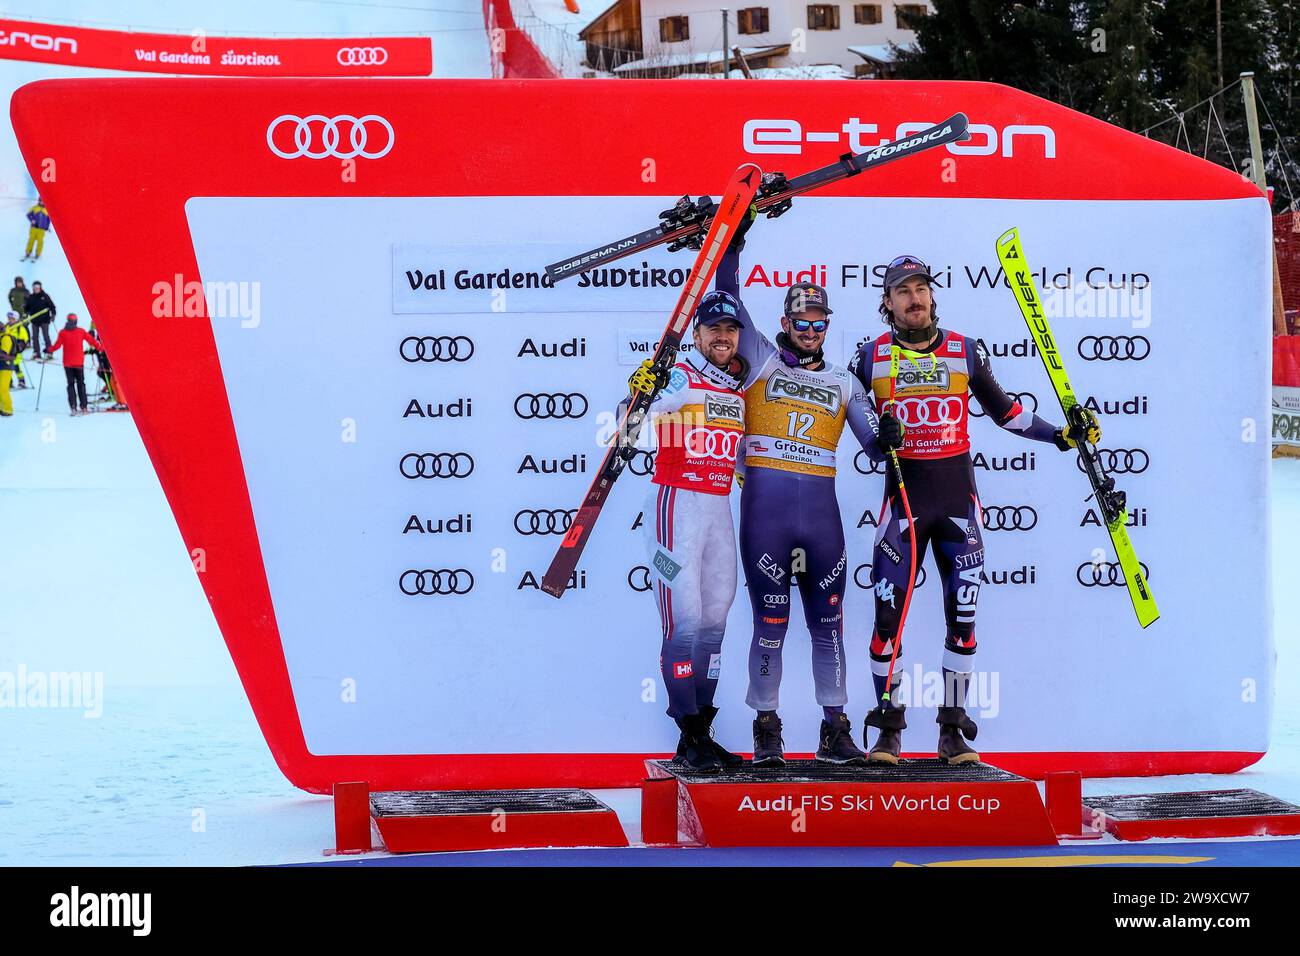 (Da L a R) Aleksander Aamodt Kilde (NOR), Dominik Paris (ITA) e Bryce Bennet (USA) competono durante la Coppa del mondo di sci alpino Audi FIS, MenÕs Downhill r Foto Stock